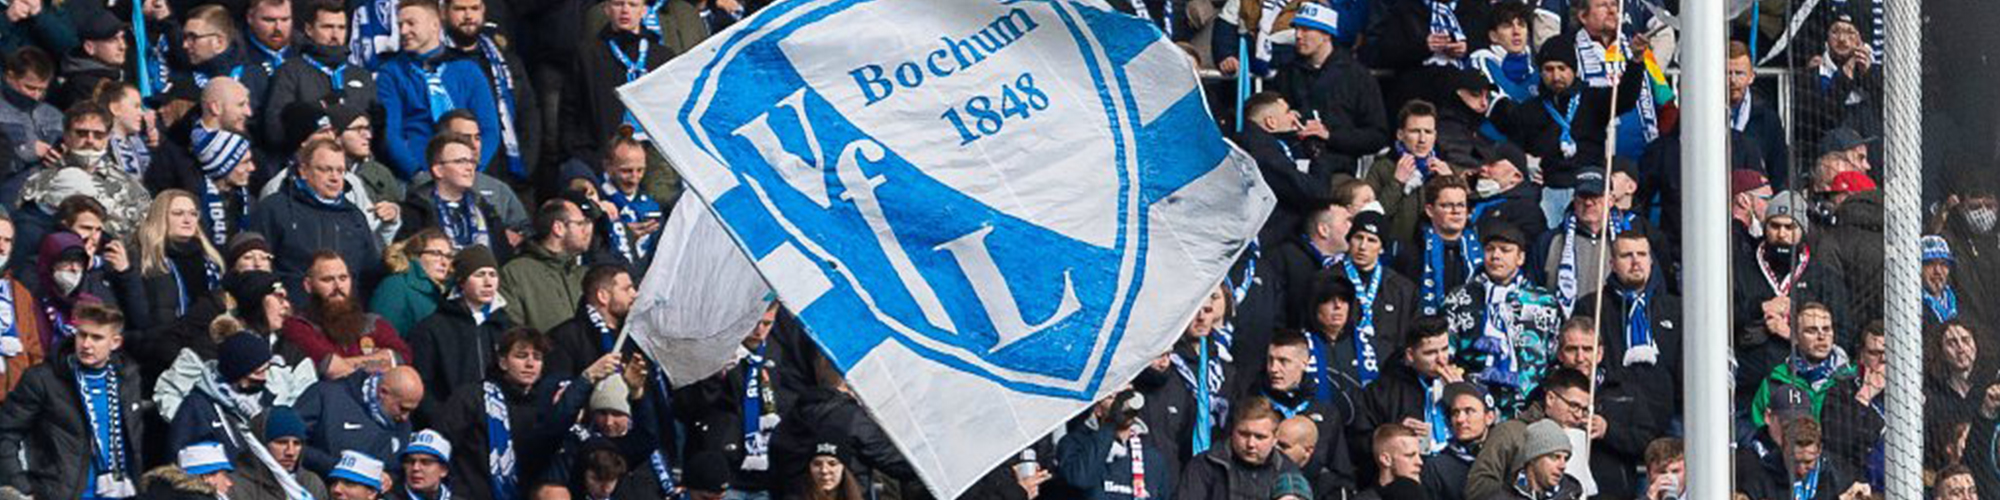 VFL Bochum Tickets & Experiences